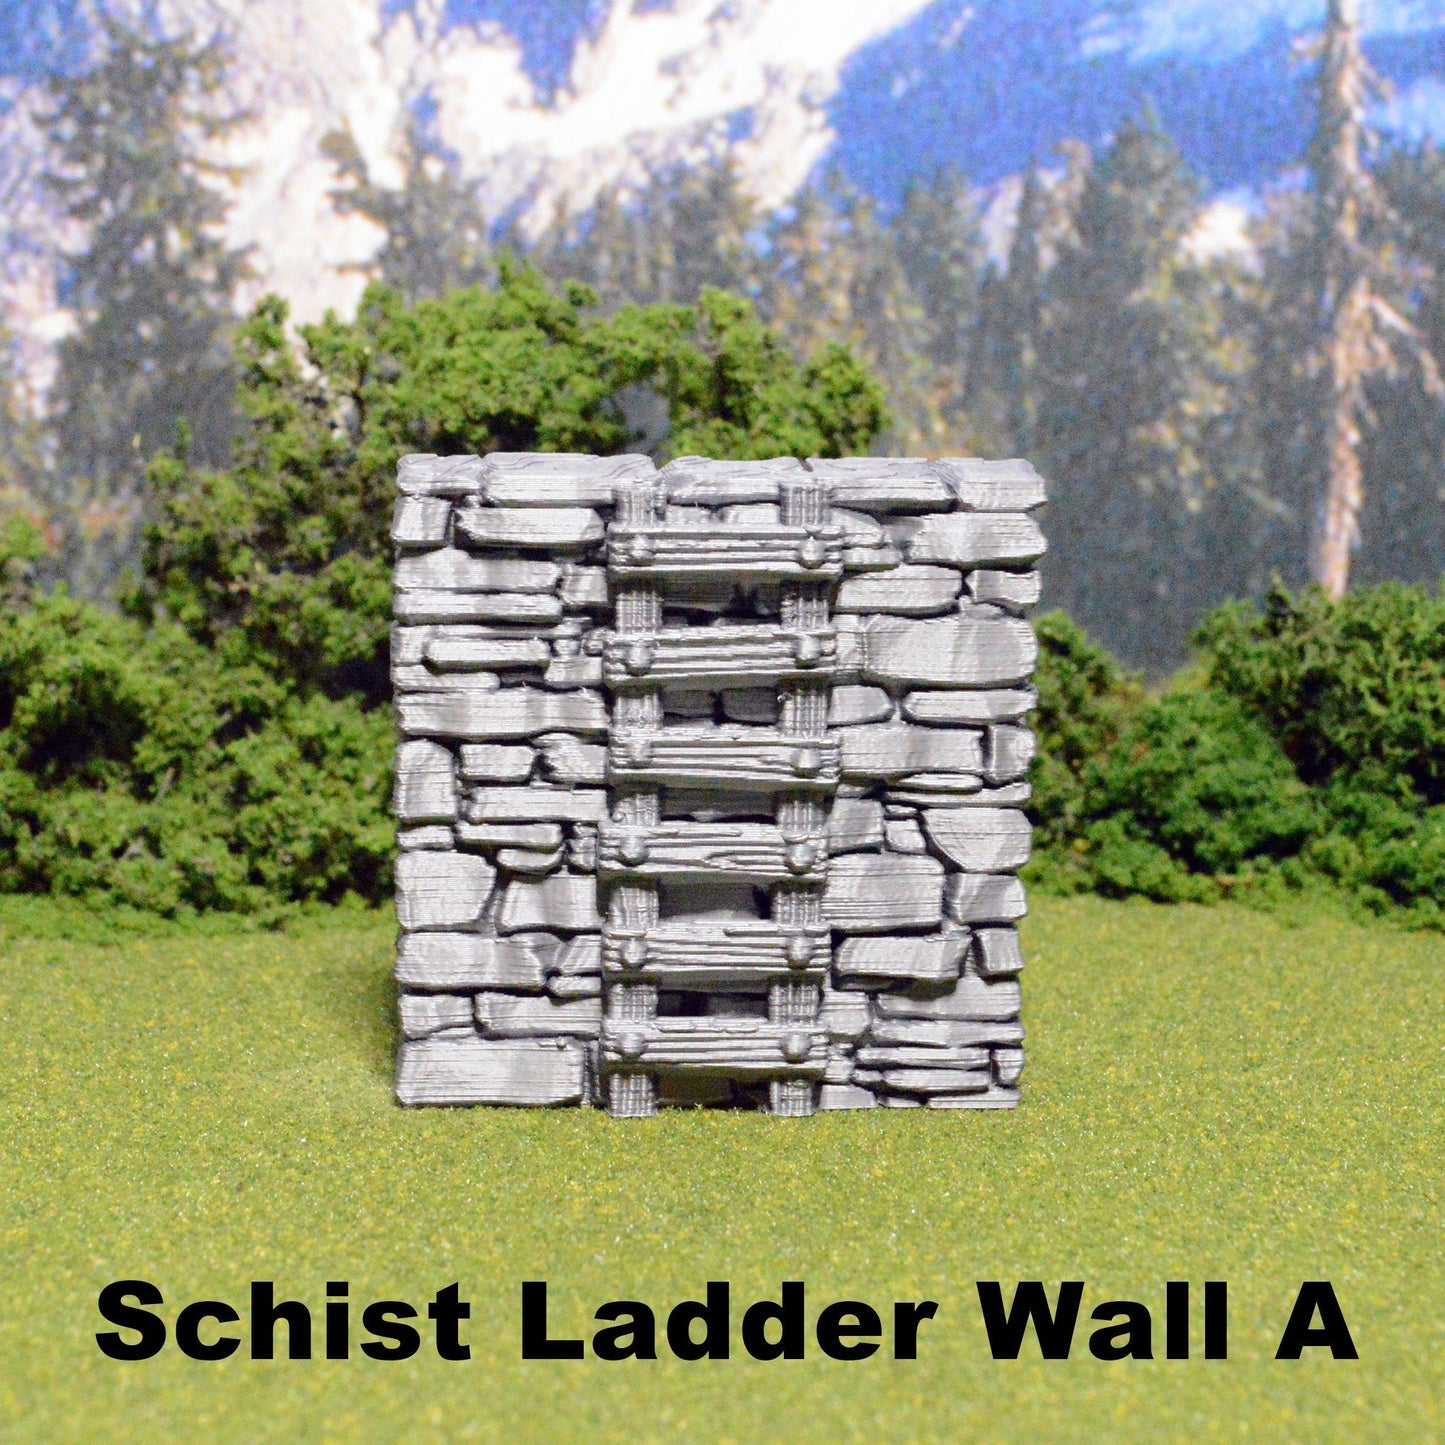 Schist Ladder Wall Tiles 28mm for D&D Terrain, Modular OpenLOCK Building Tiles, DnD Medieval Village Stone Wall Tiles